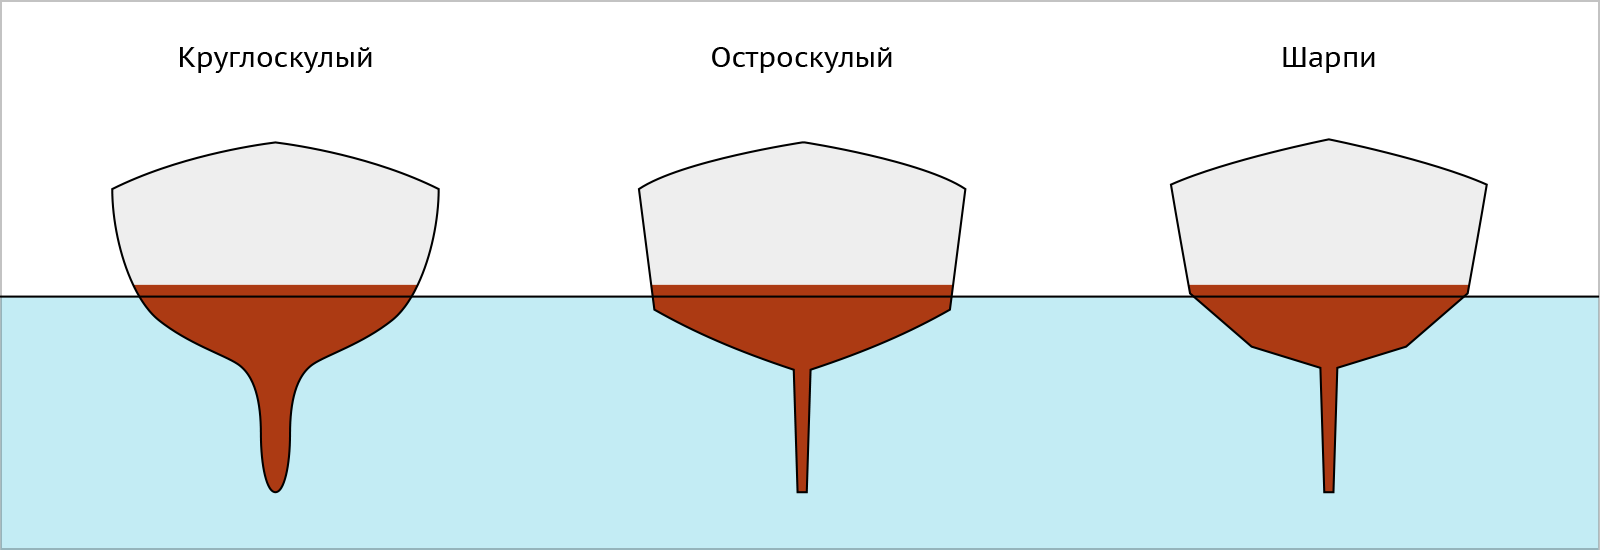 Типы обводов шпангоутов корпуса яхты